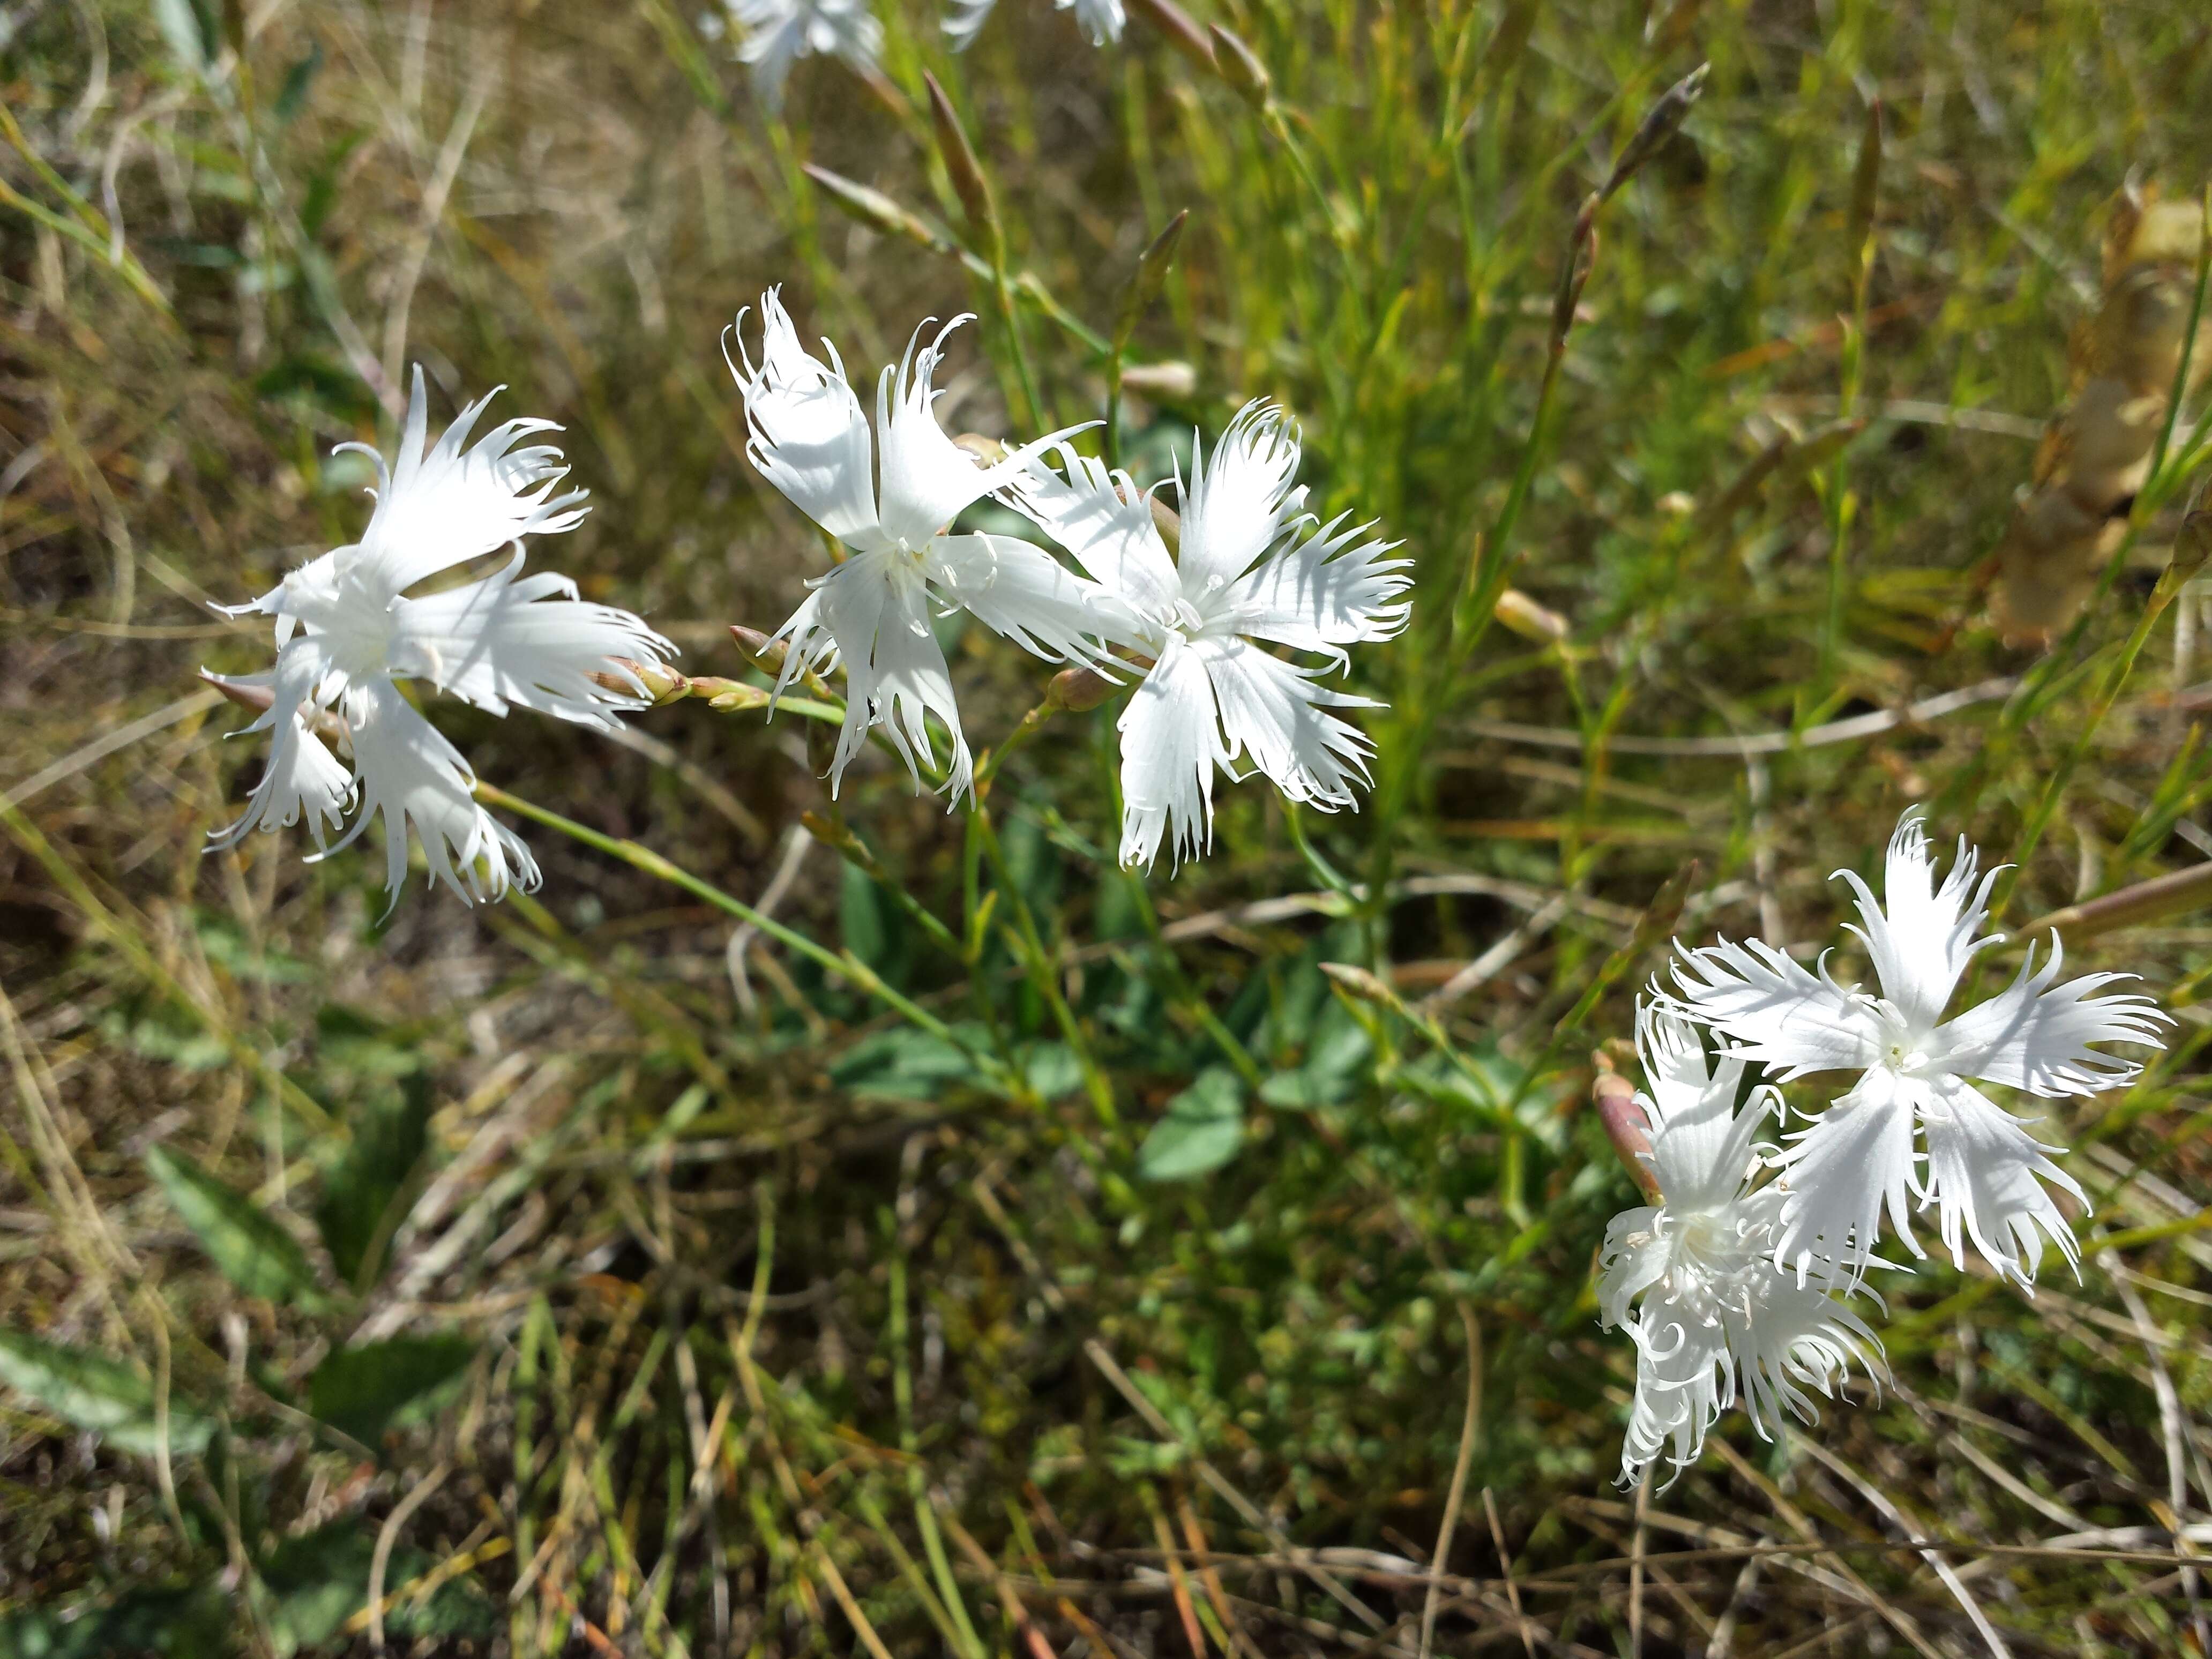 Image of Dianthus serotinus Waldst. & Kit.